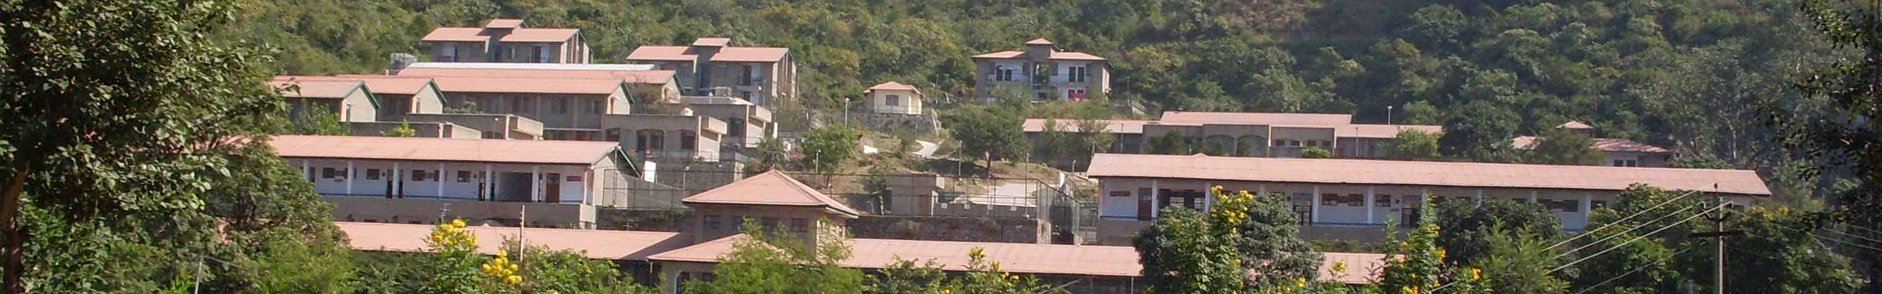 Bahadurpur Fort Bilaspur, Himachal